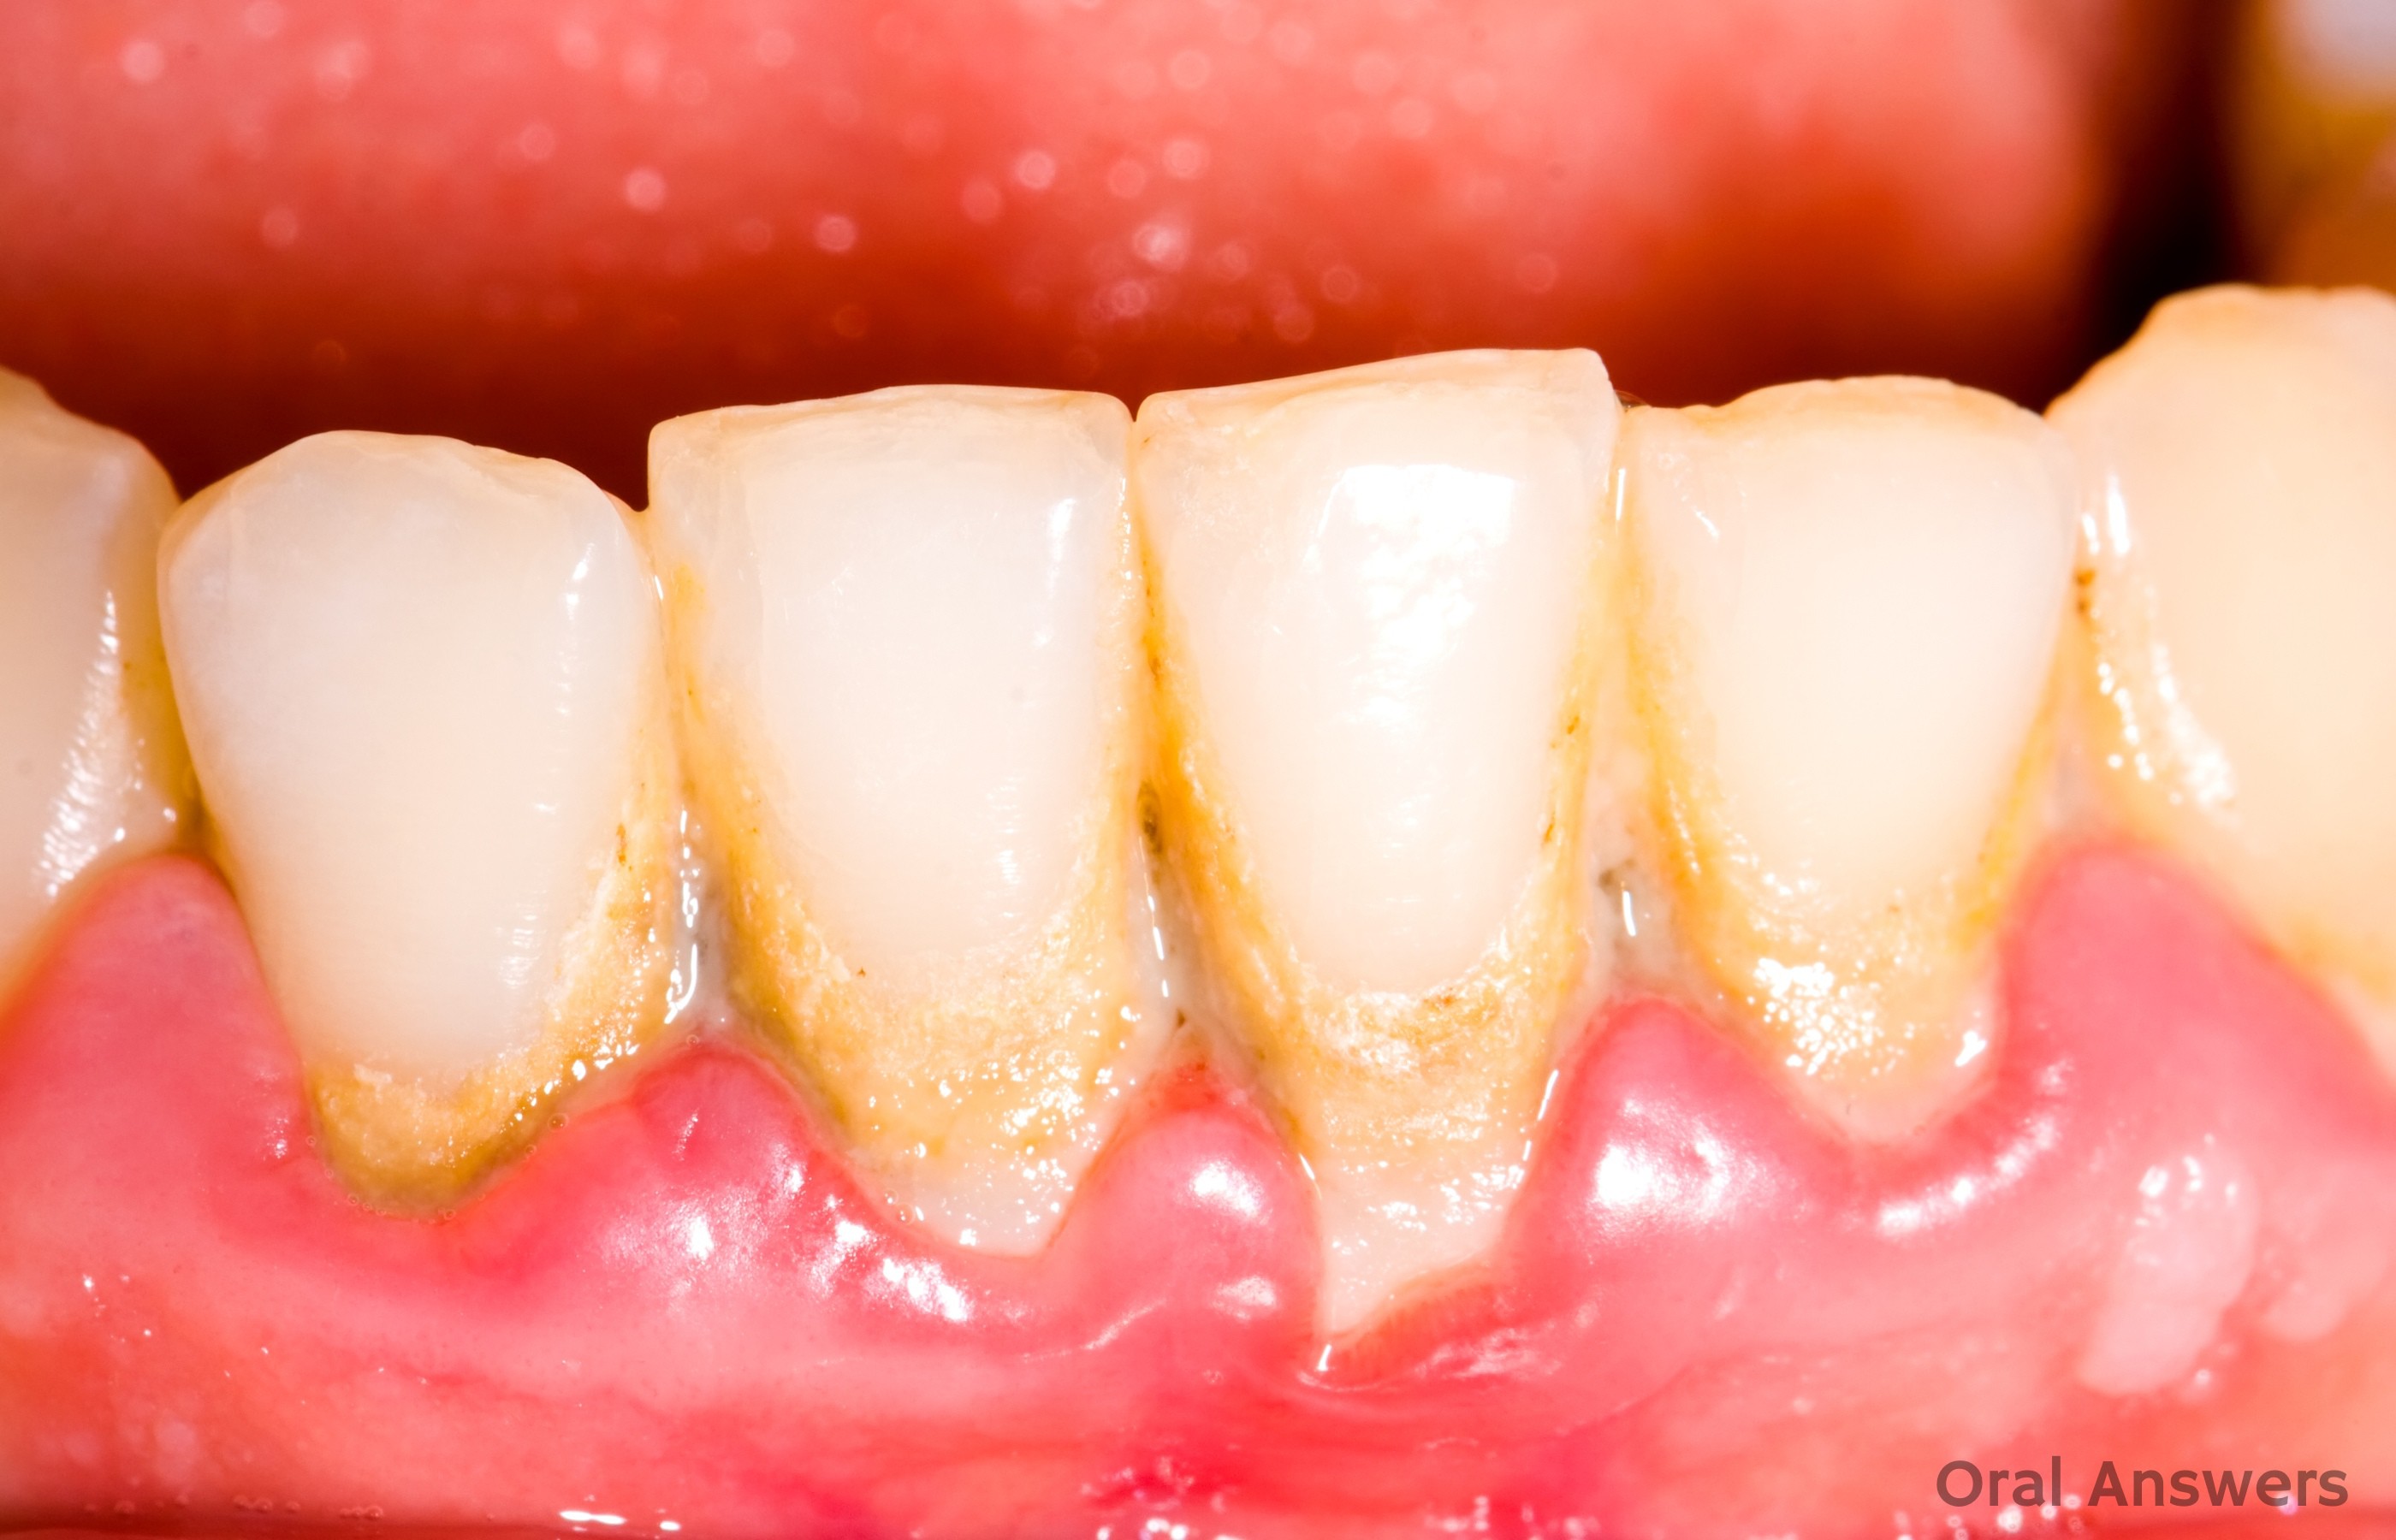 What causes swollen gums in between teeth?